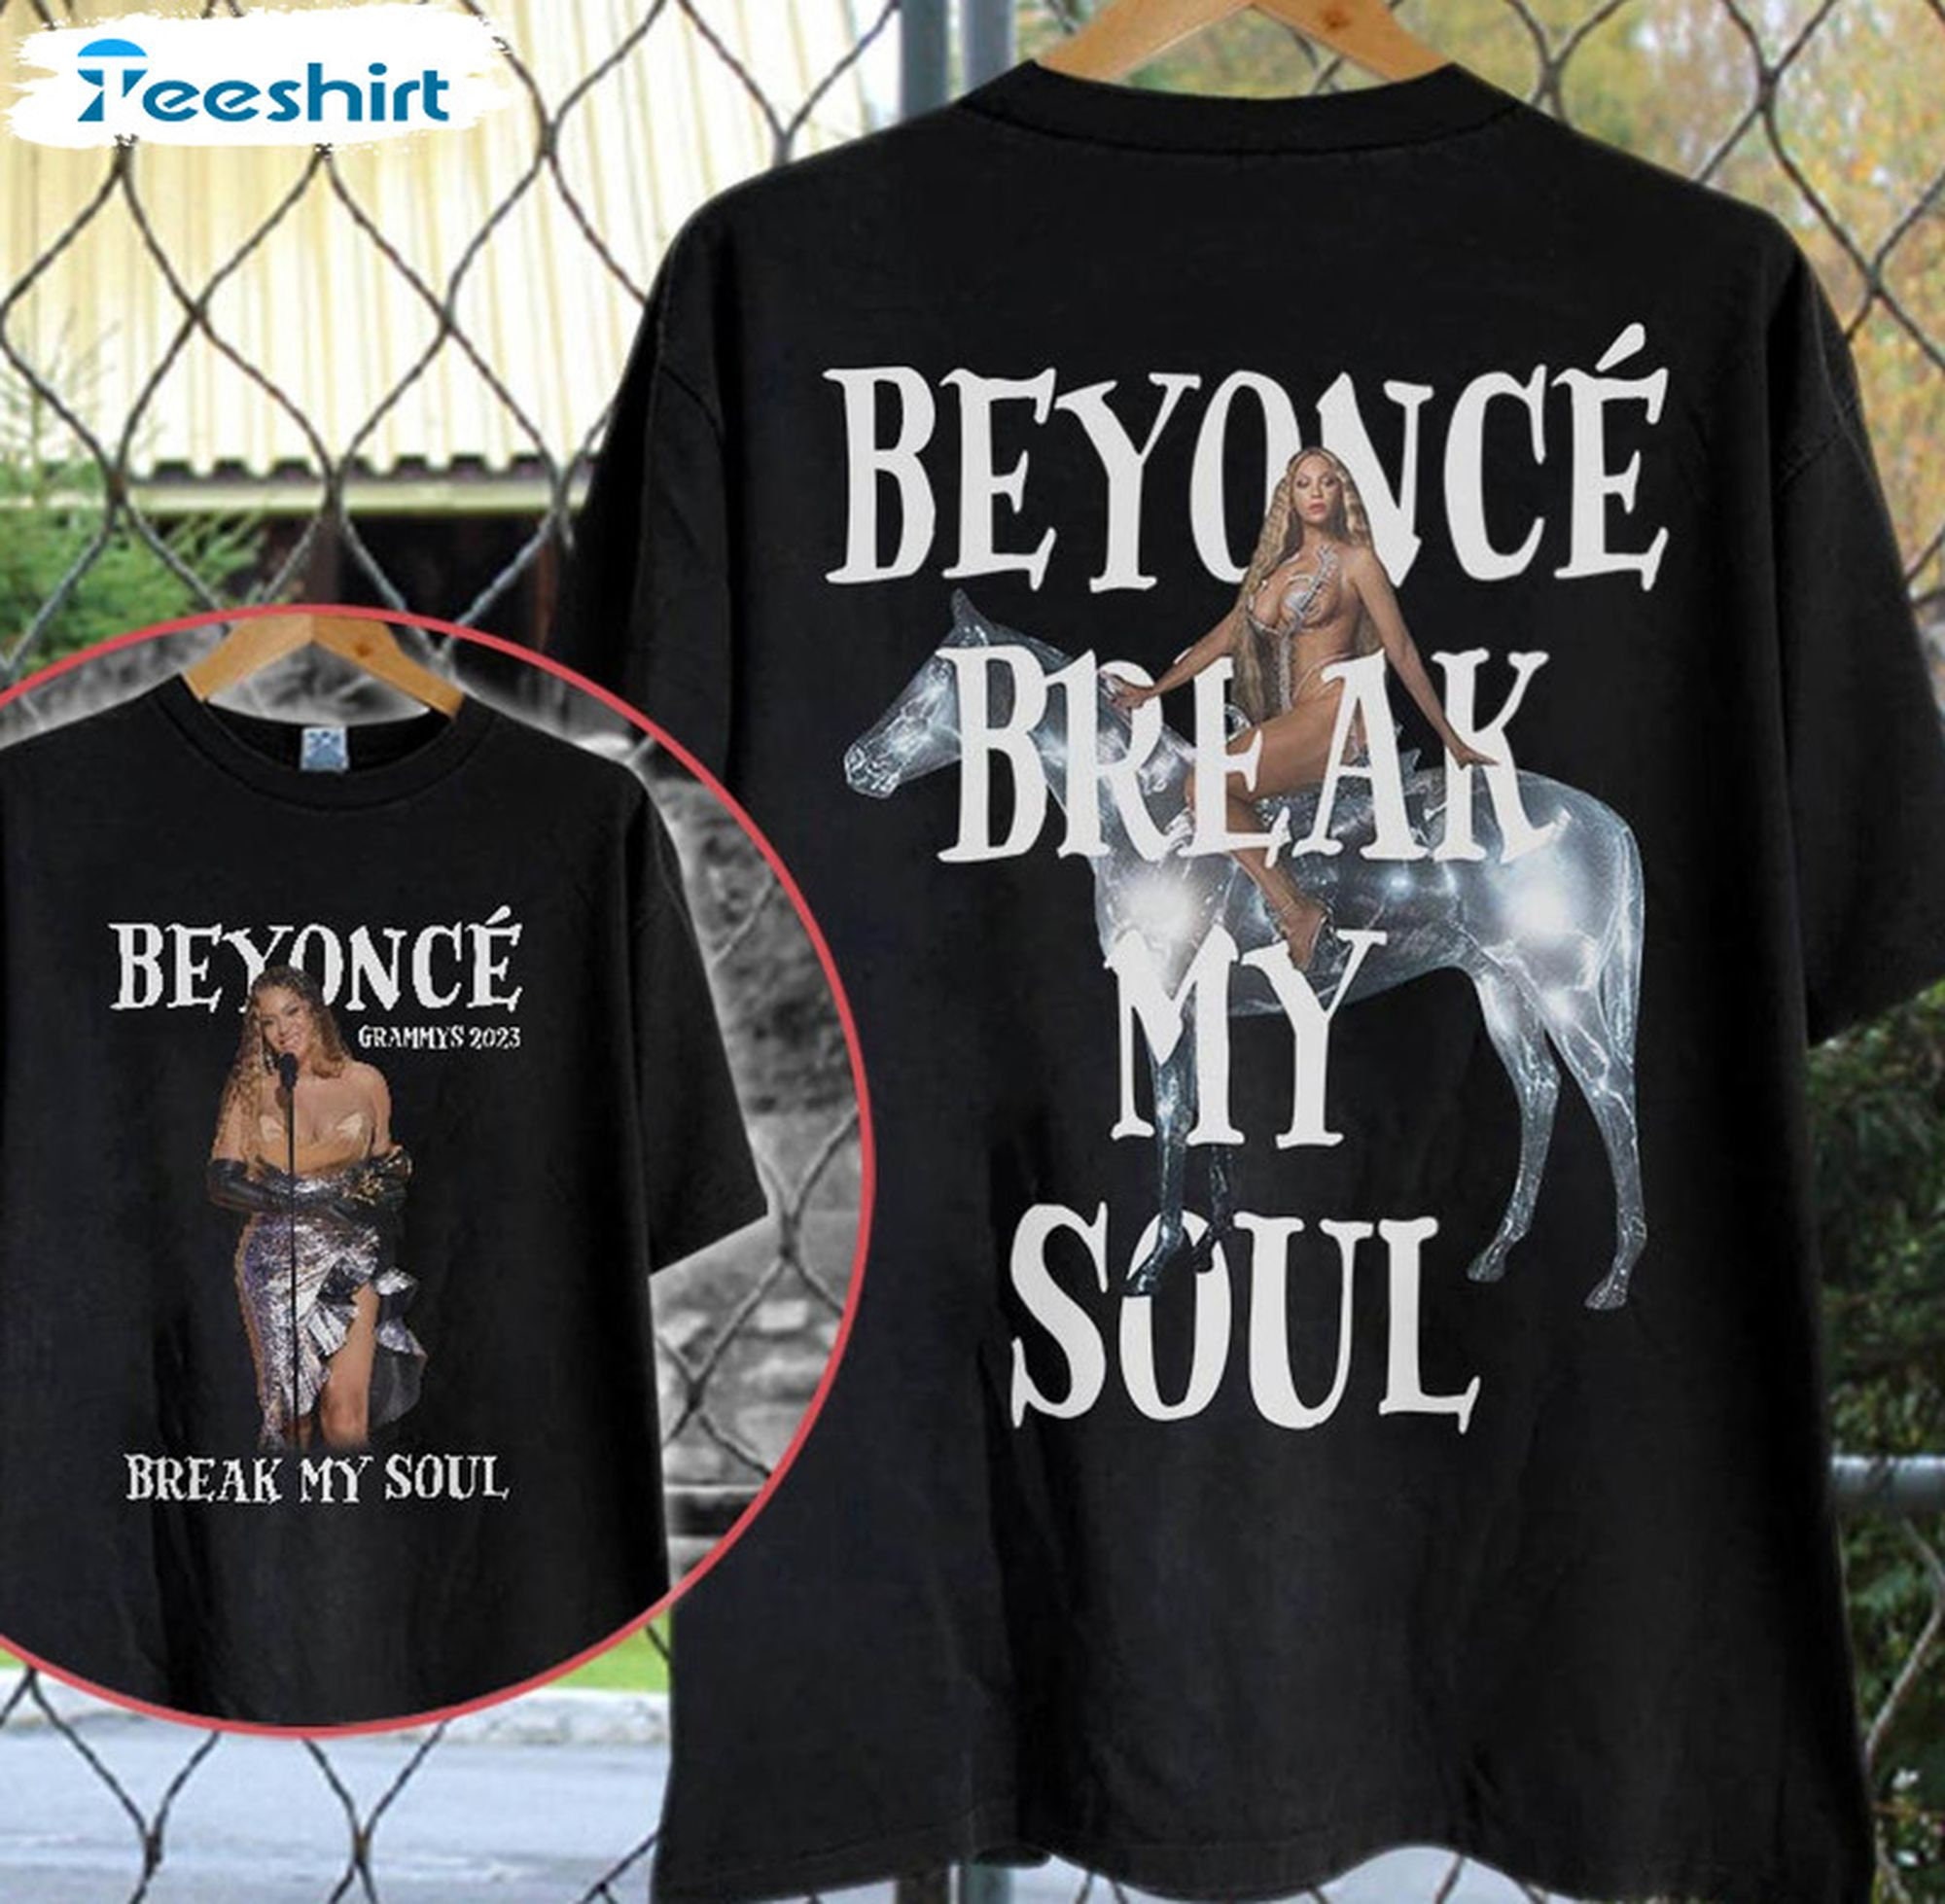 Discover Break My Soul Beyonce, The Grammys 2023 gewinnt Zweiseitiges T-Shirt